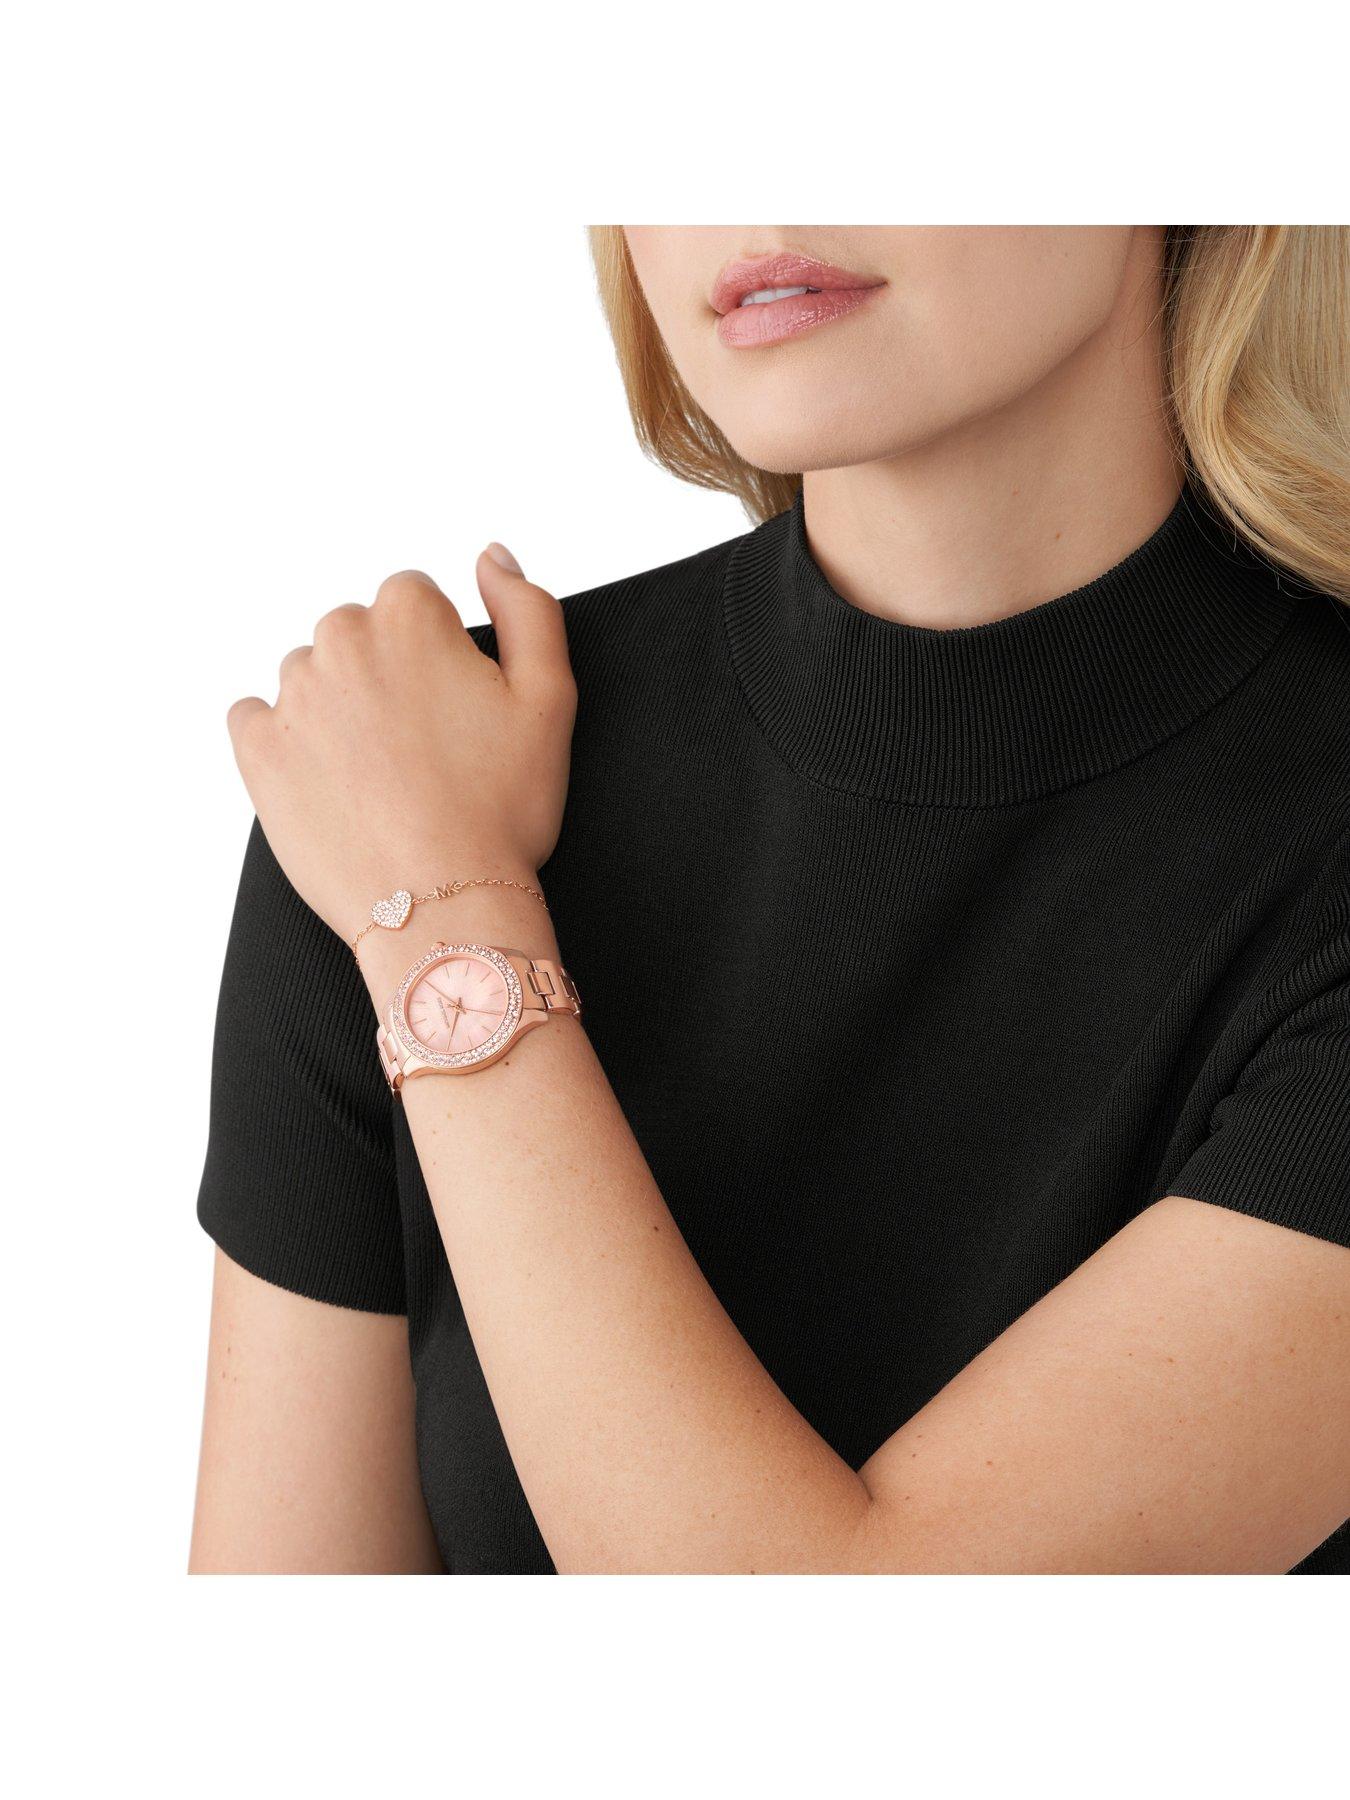 Michael Kors Liliane Womens Watch & Bracelet Set 